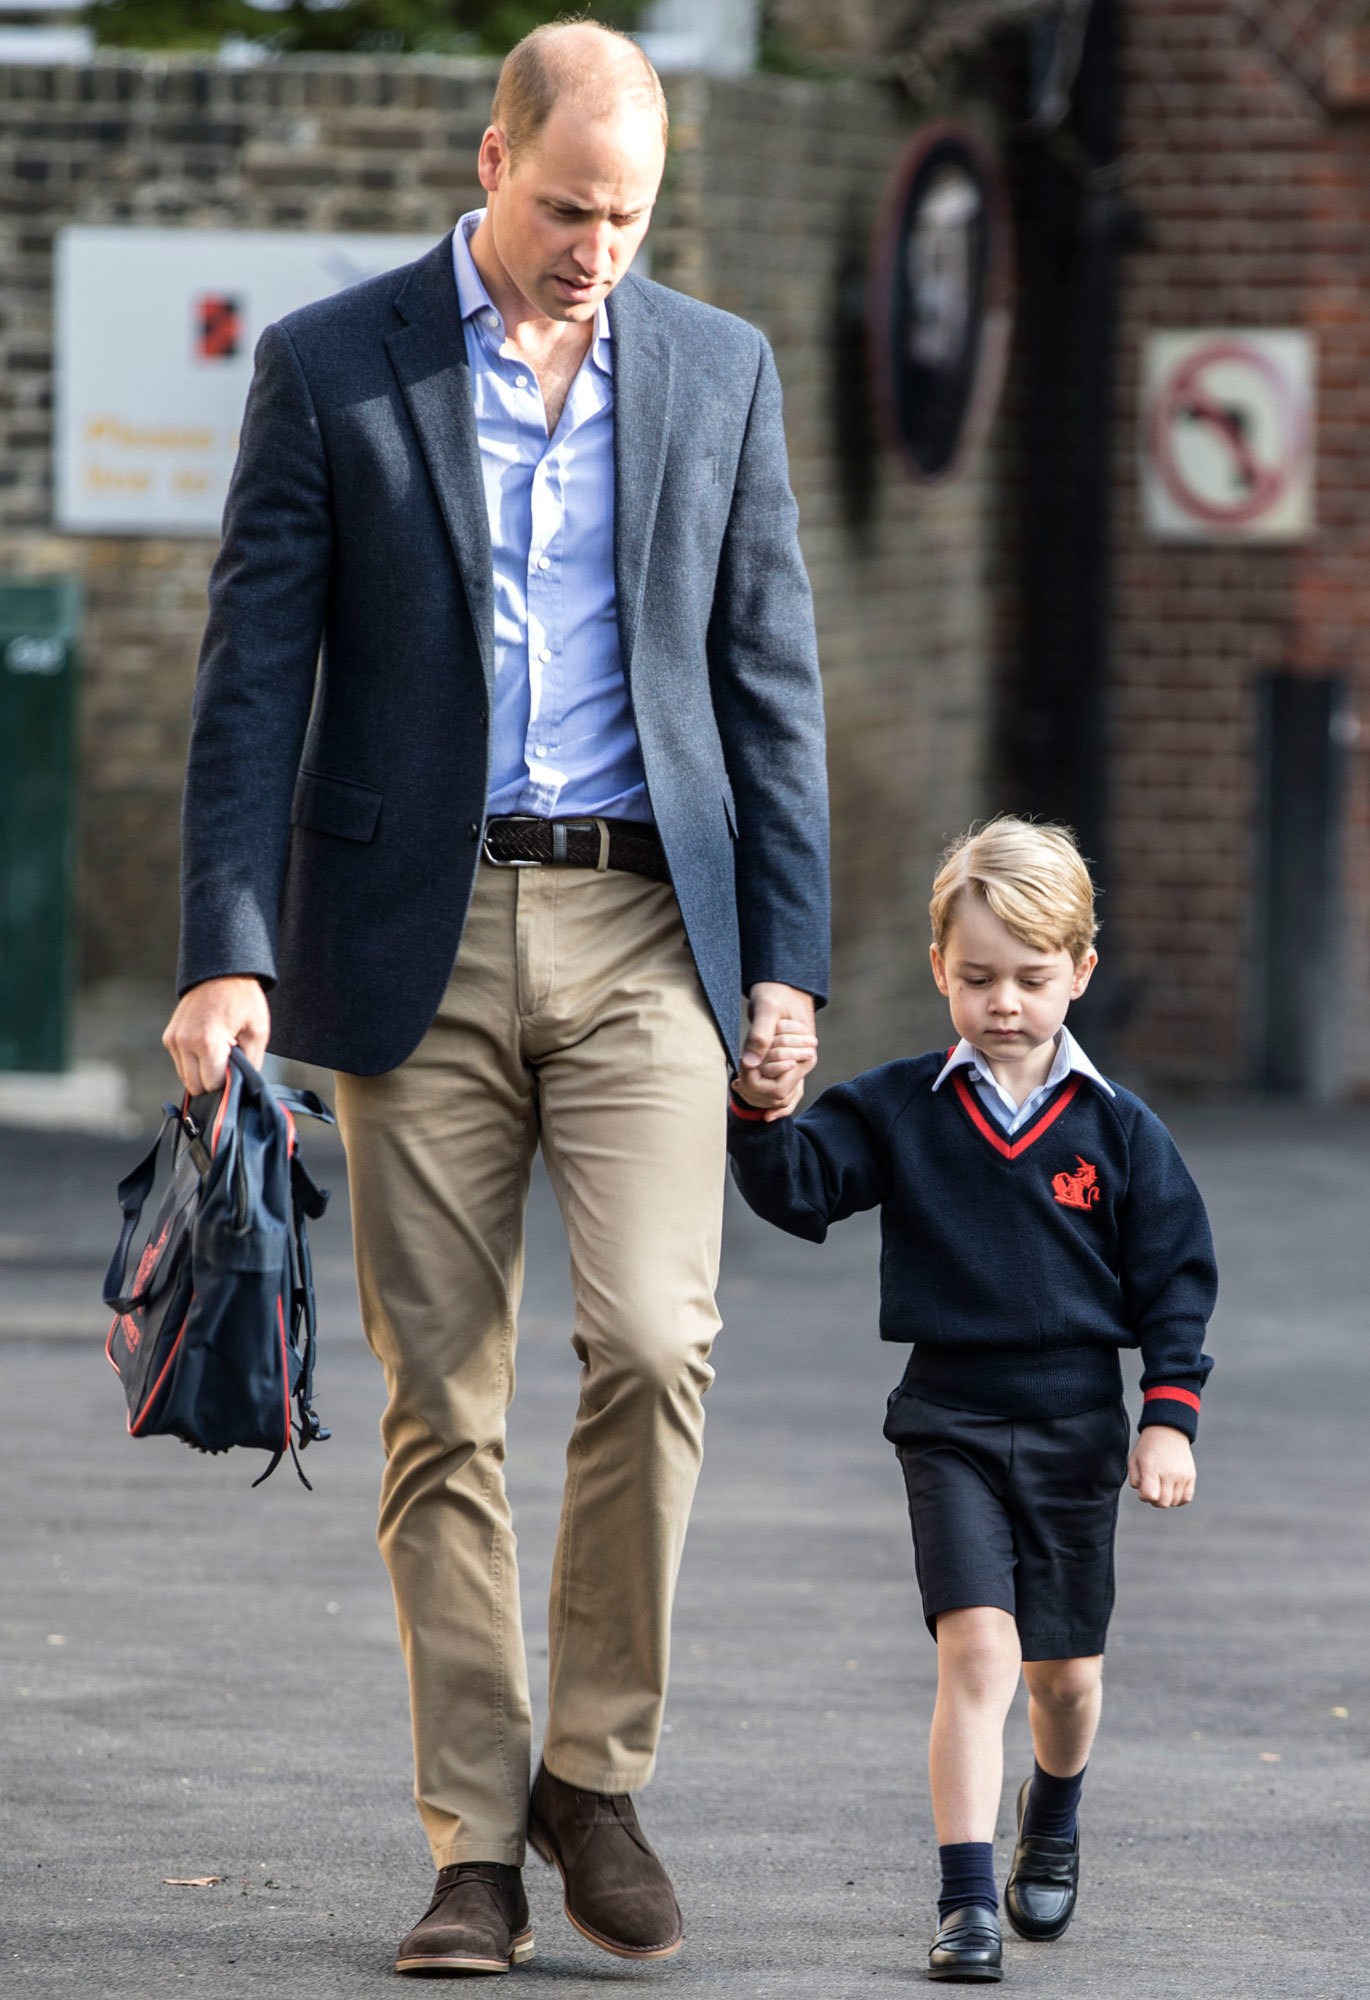 Hoàng tử bé 5 tuổi vào top 30 người mặc đẹp nhất nước Anh